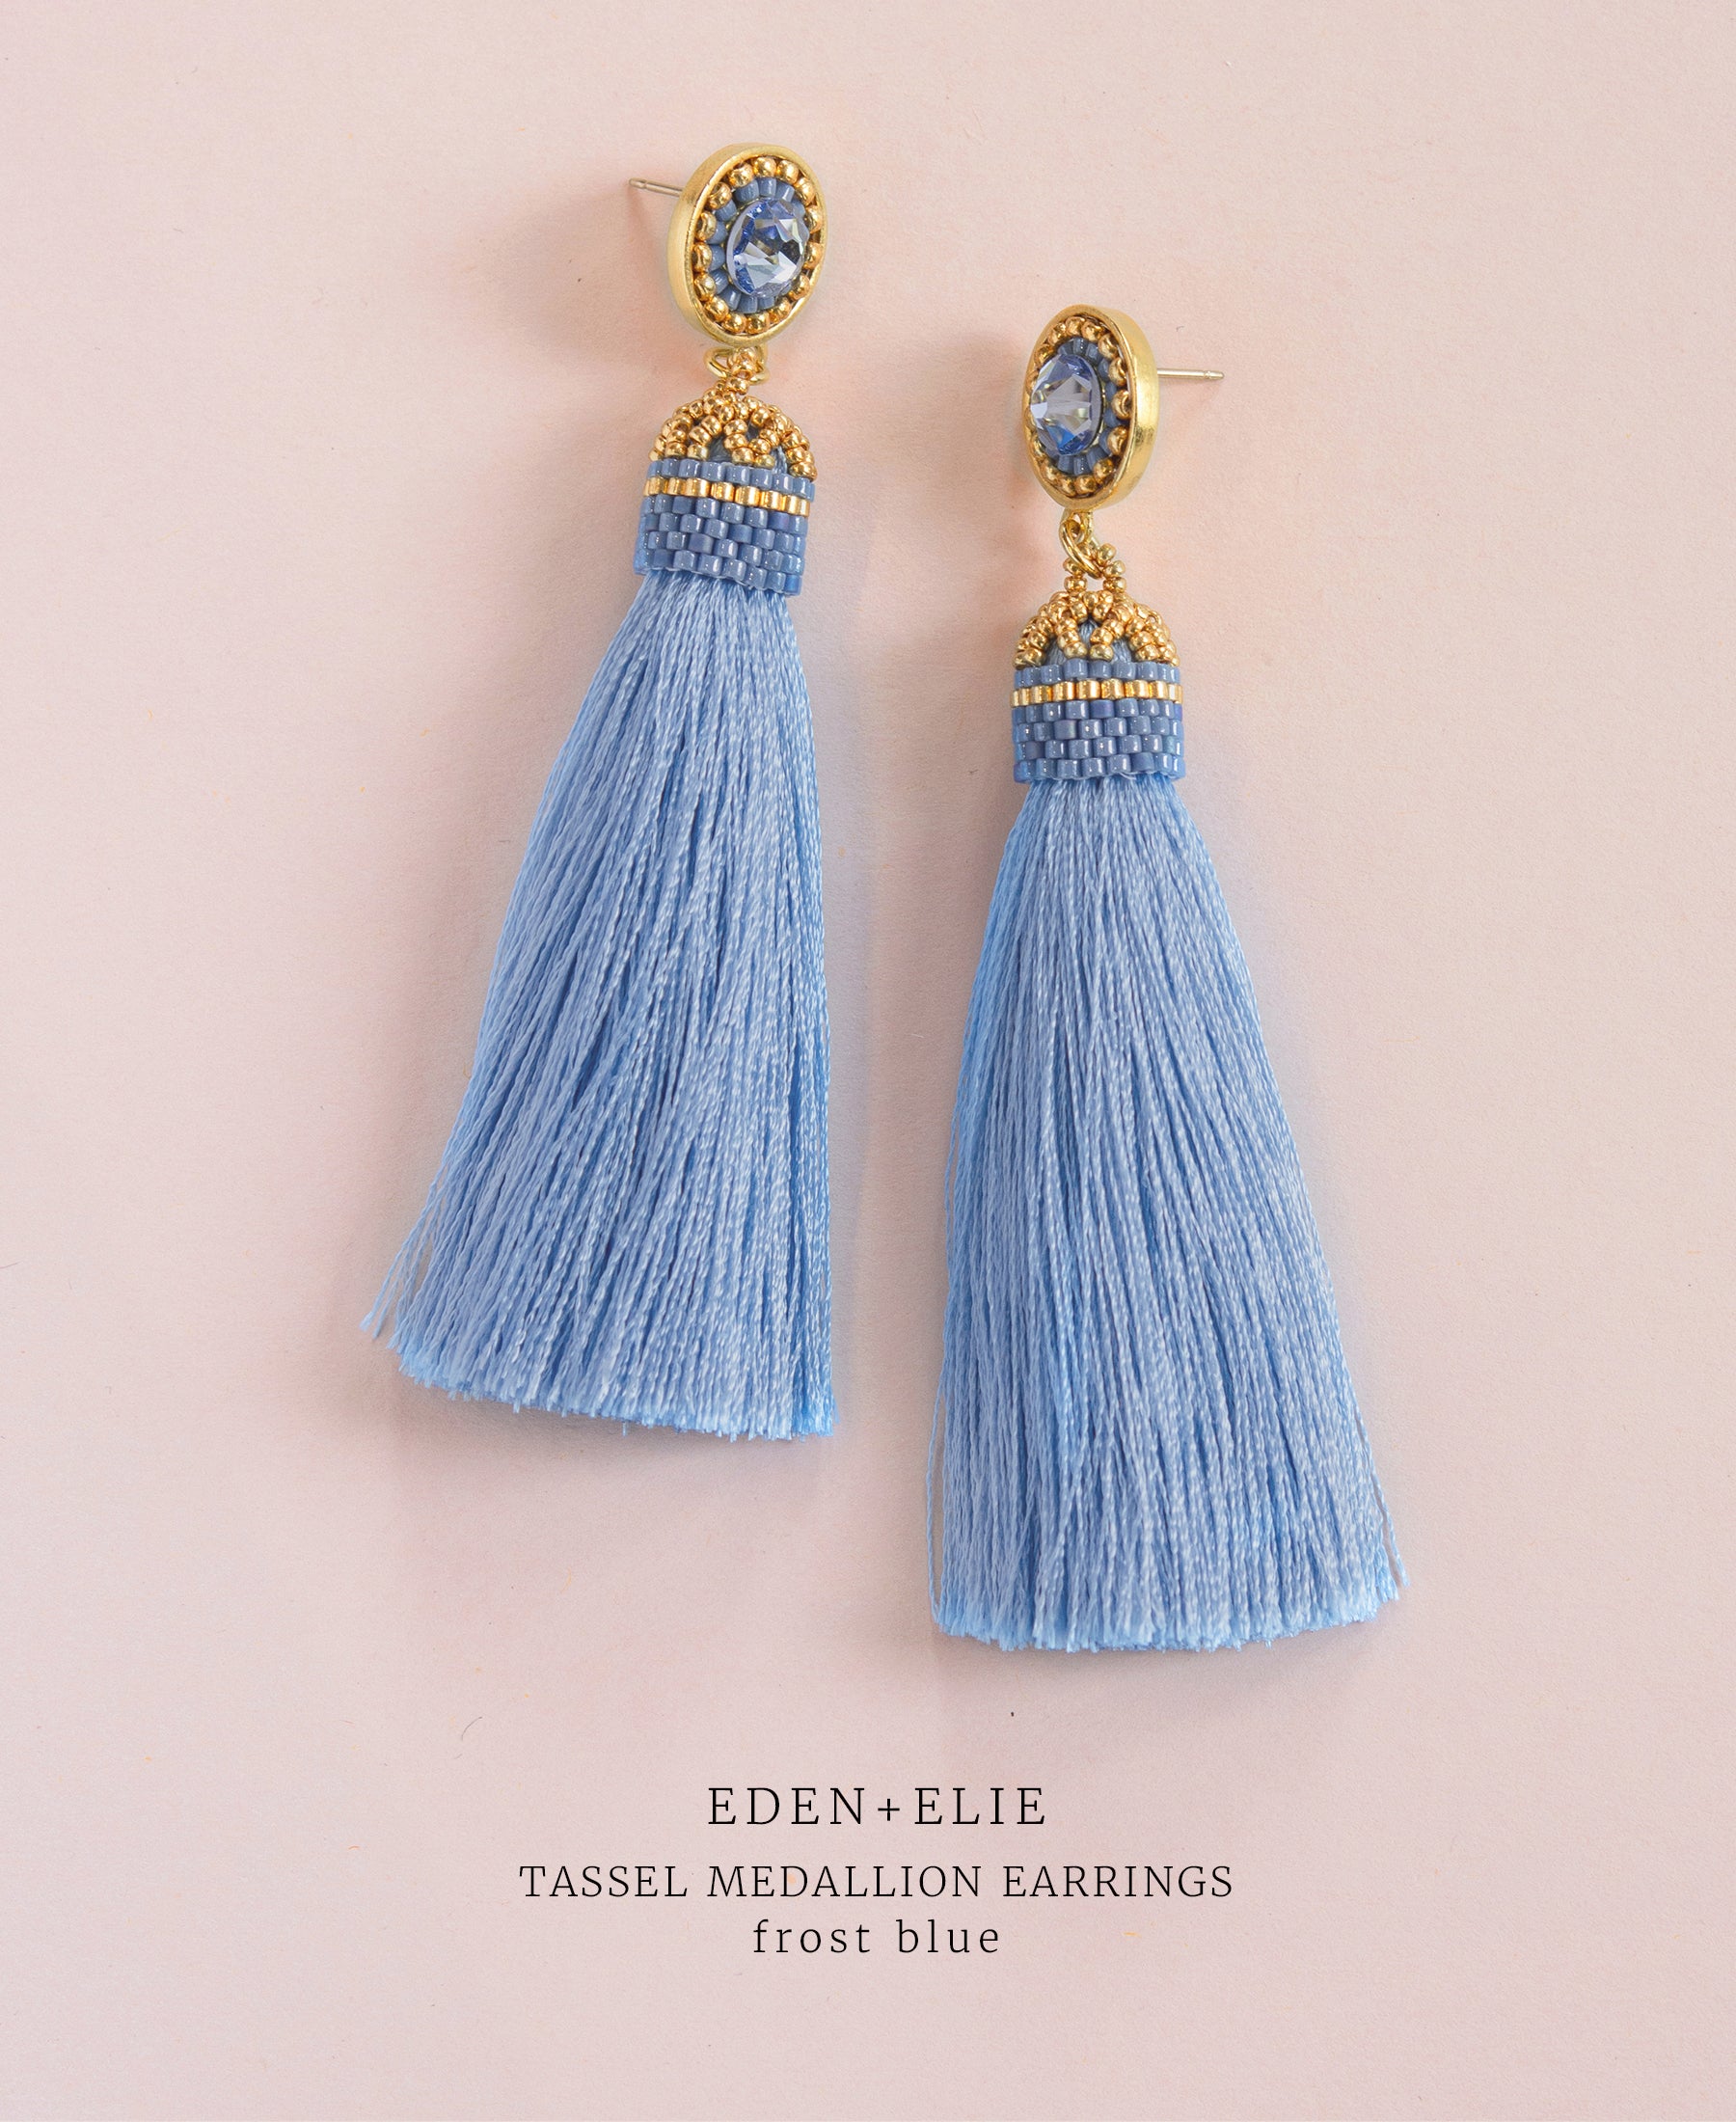 EDEN + ELIE silk tassel statement earrings - frost blue